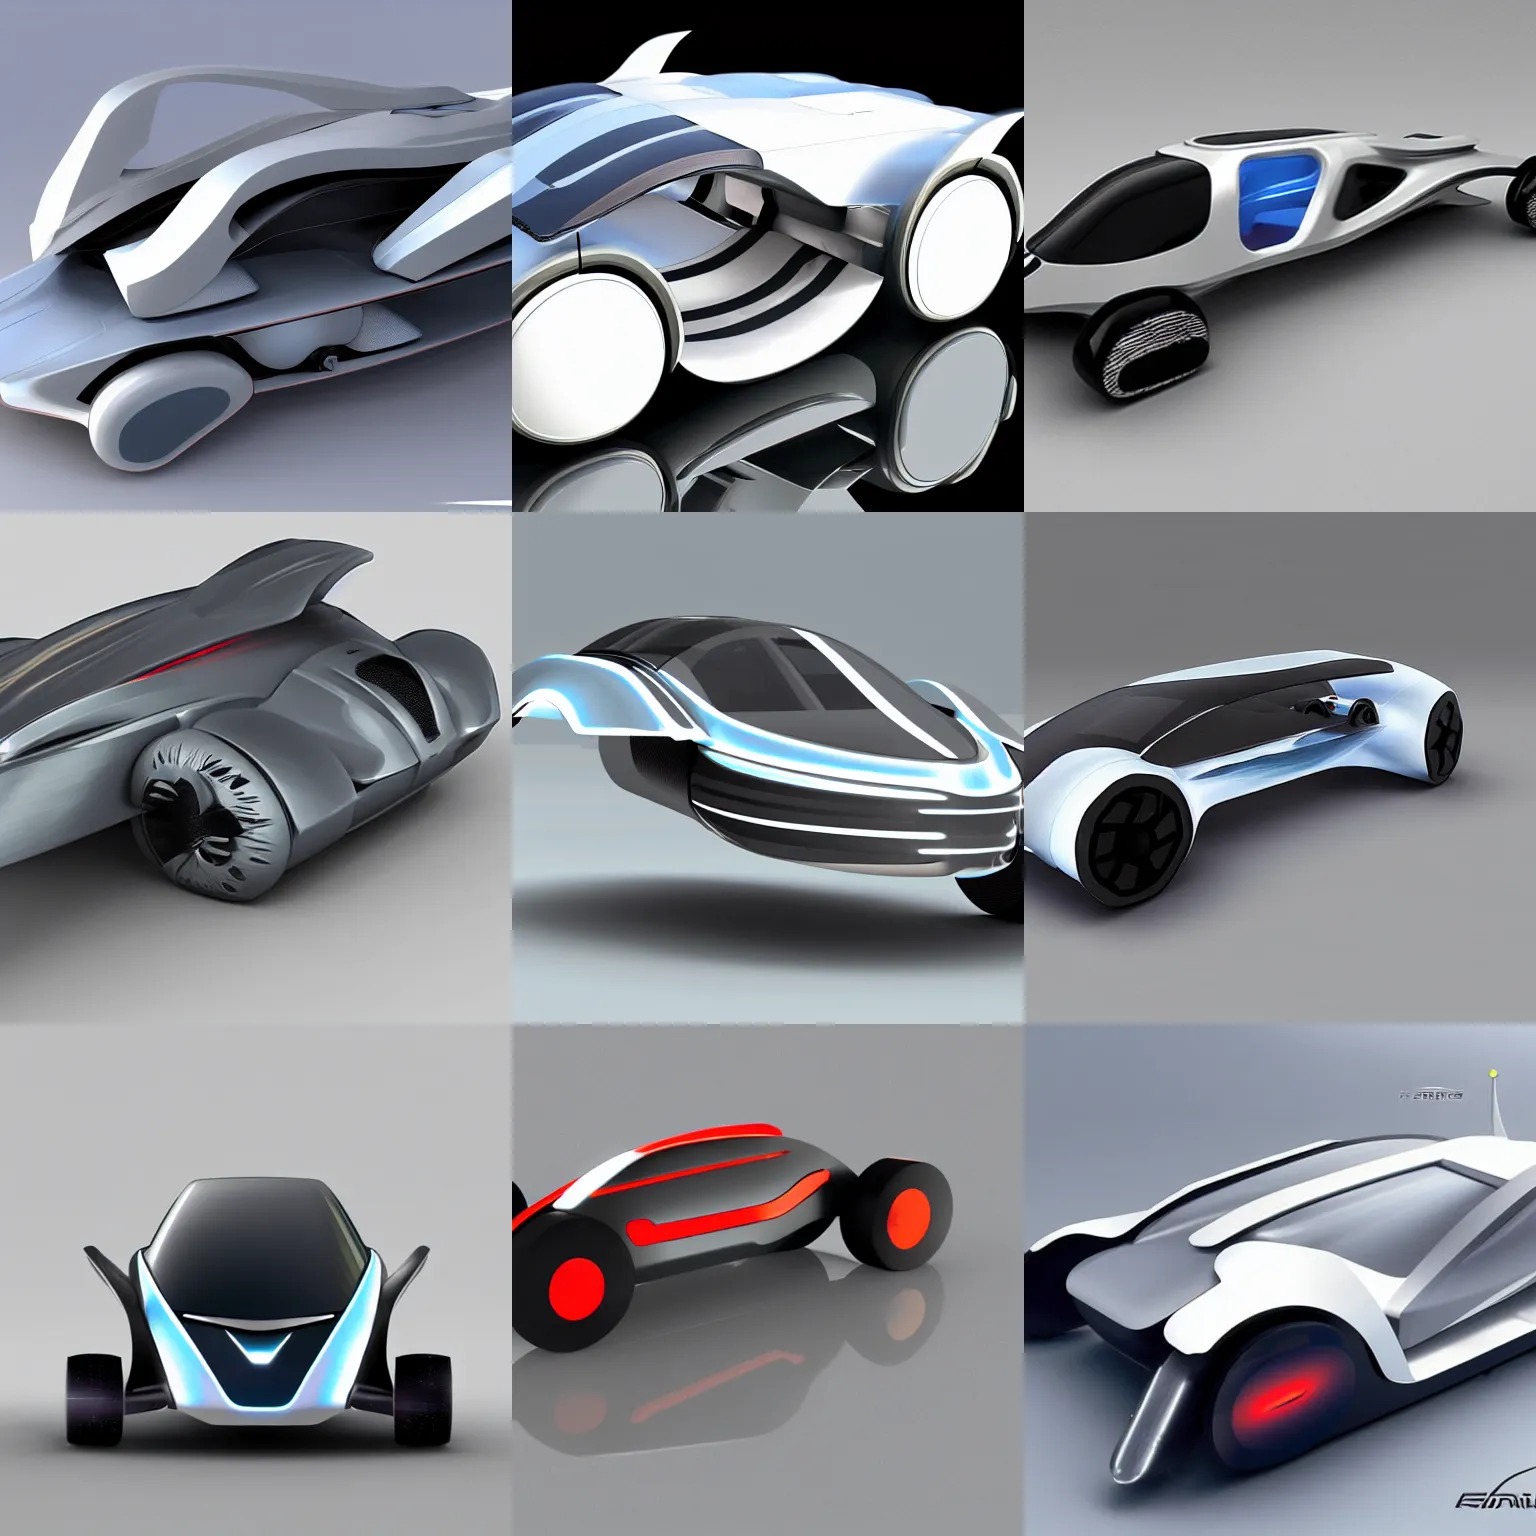 Prompt: futuristic vehicle design concept